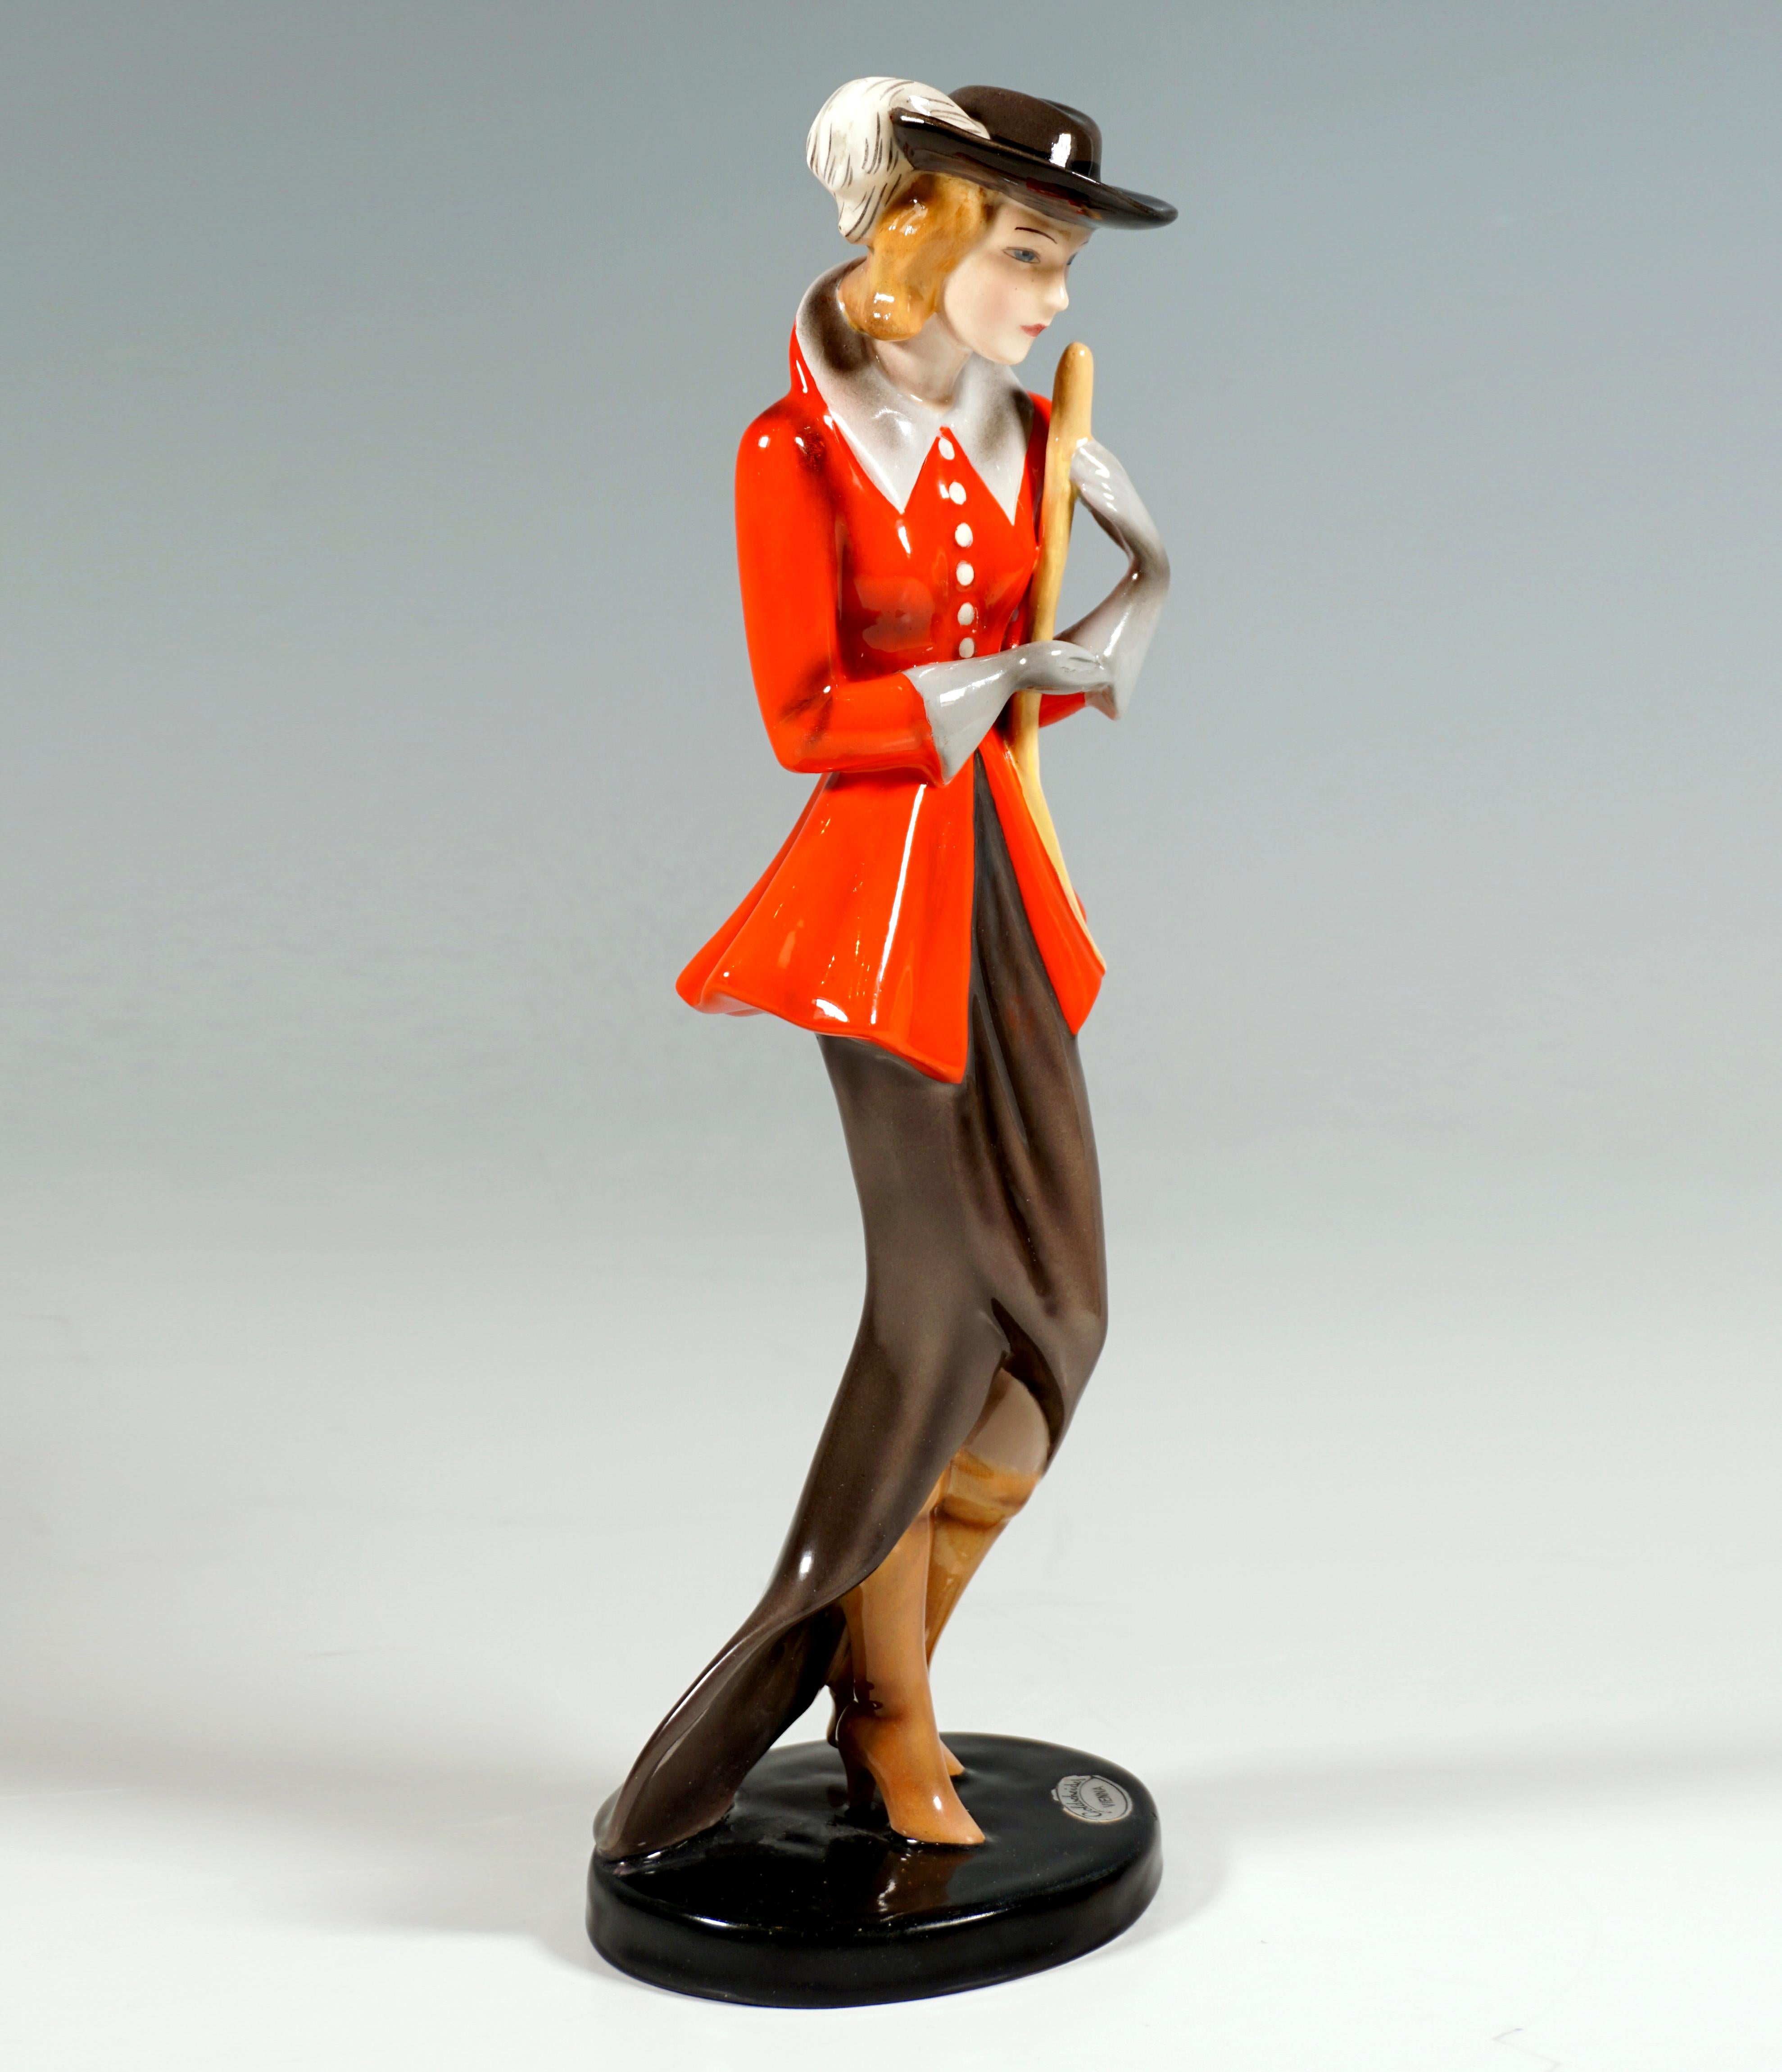 Très rare figurine en céramique Goldscheider Vienna des années 1930 :
Dame élégante, debout, coiffée d'un chapeau à plumes foncé, vêtue d'une longue jupe foncée et d'une veste rouge cintrée avec un col haut gris clair et des gants assortis, tenant